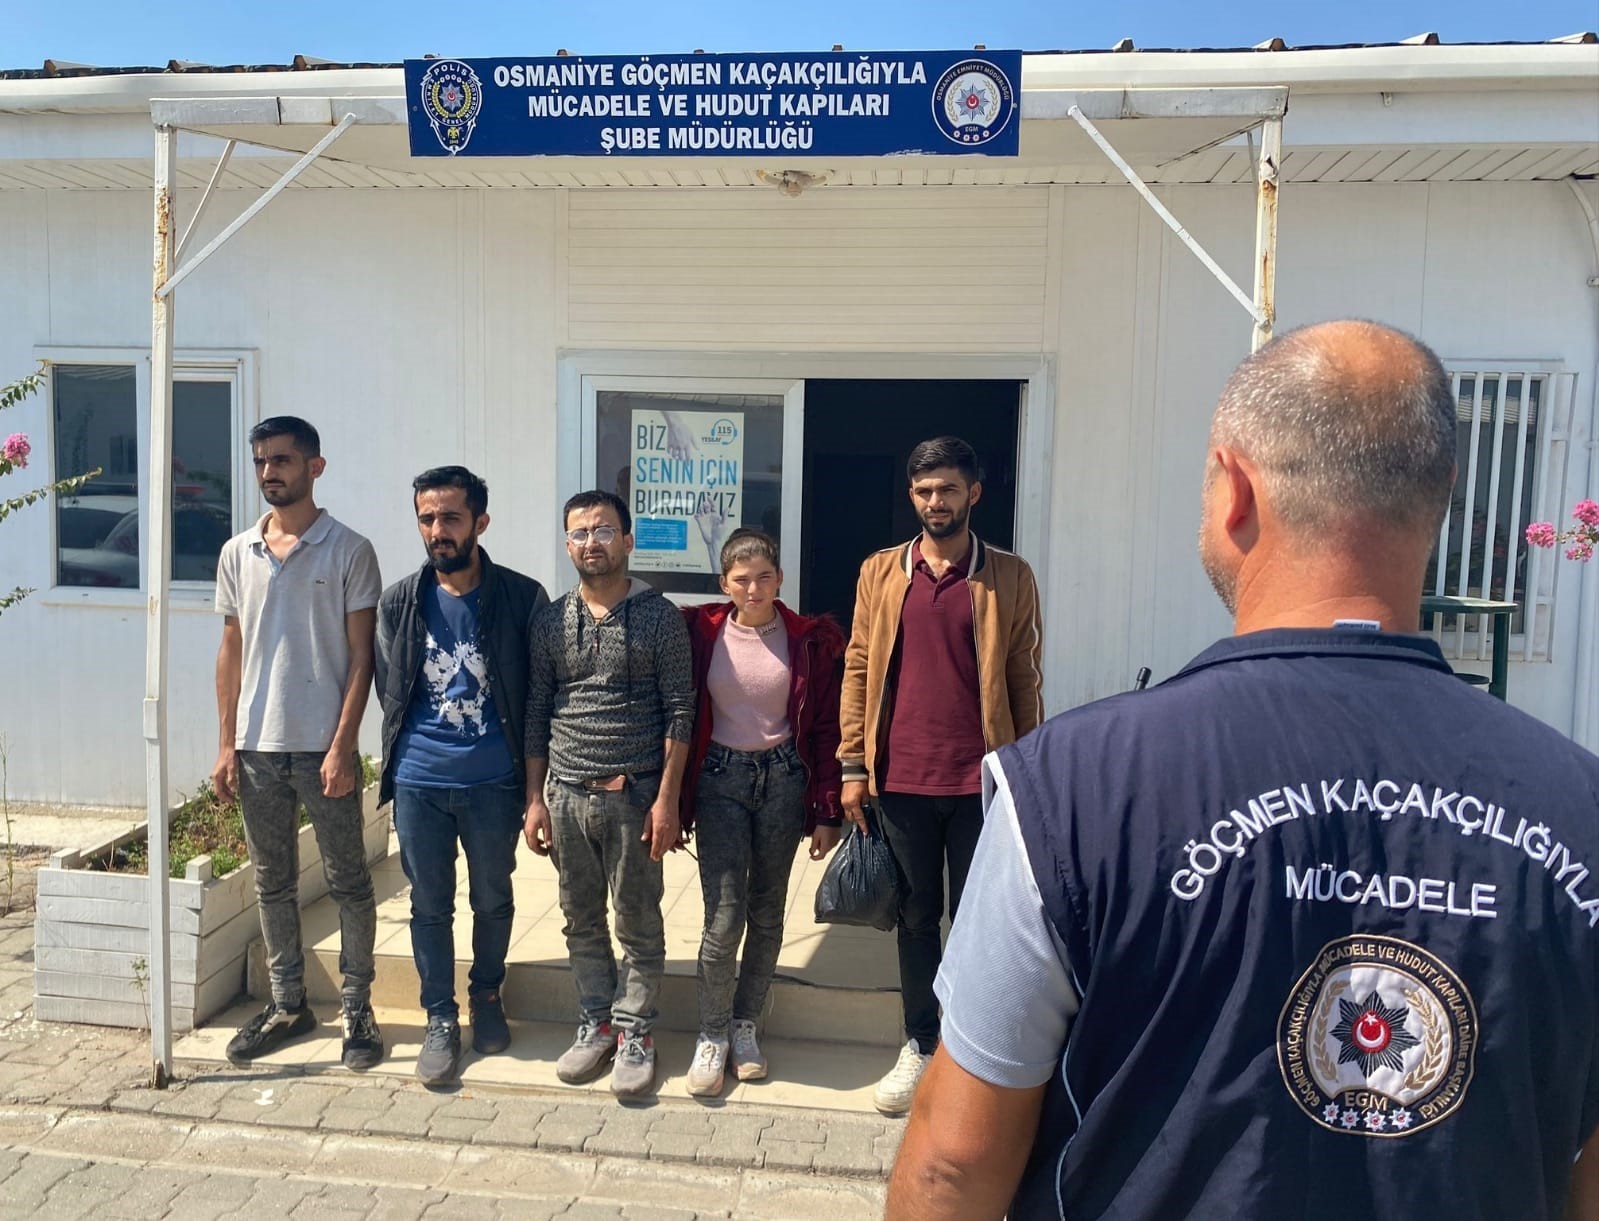  17 düzensiz göçmen 3 organizatör yakalandı